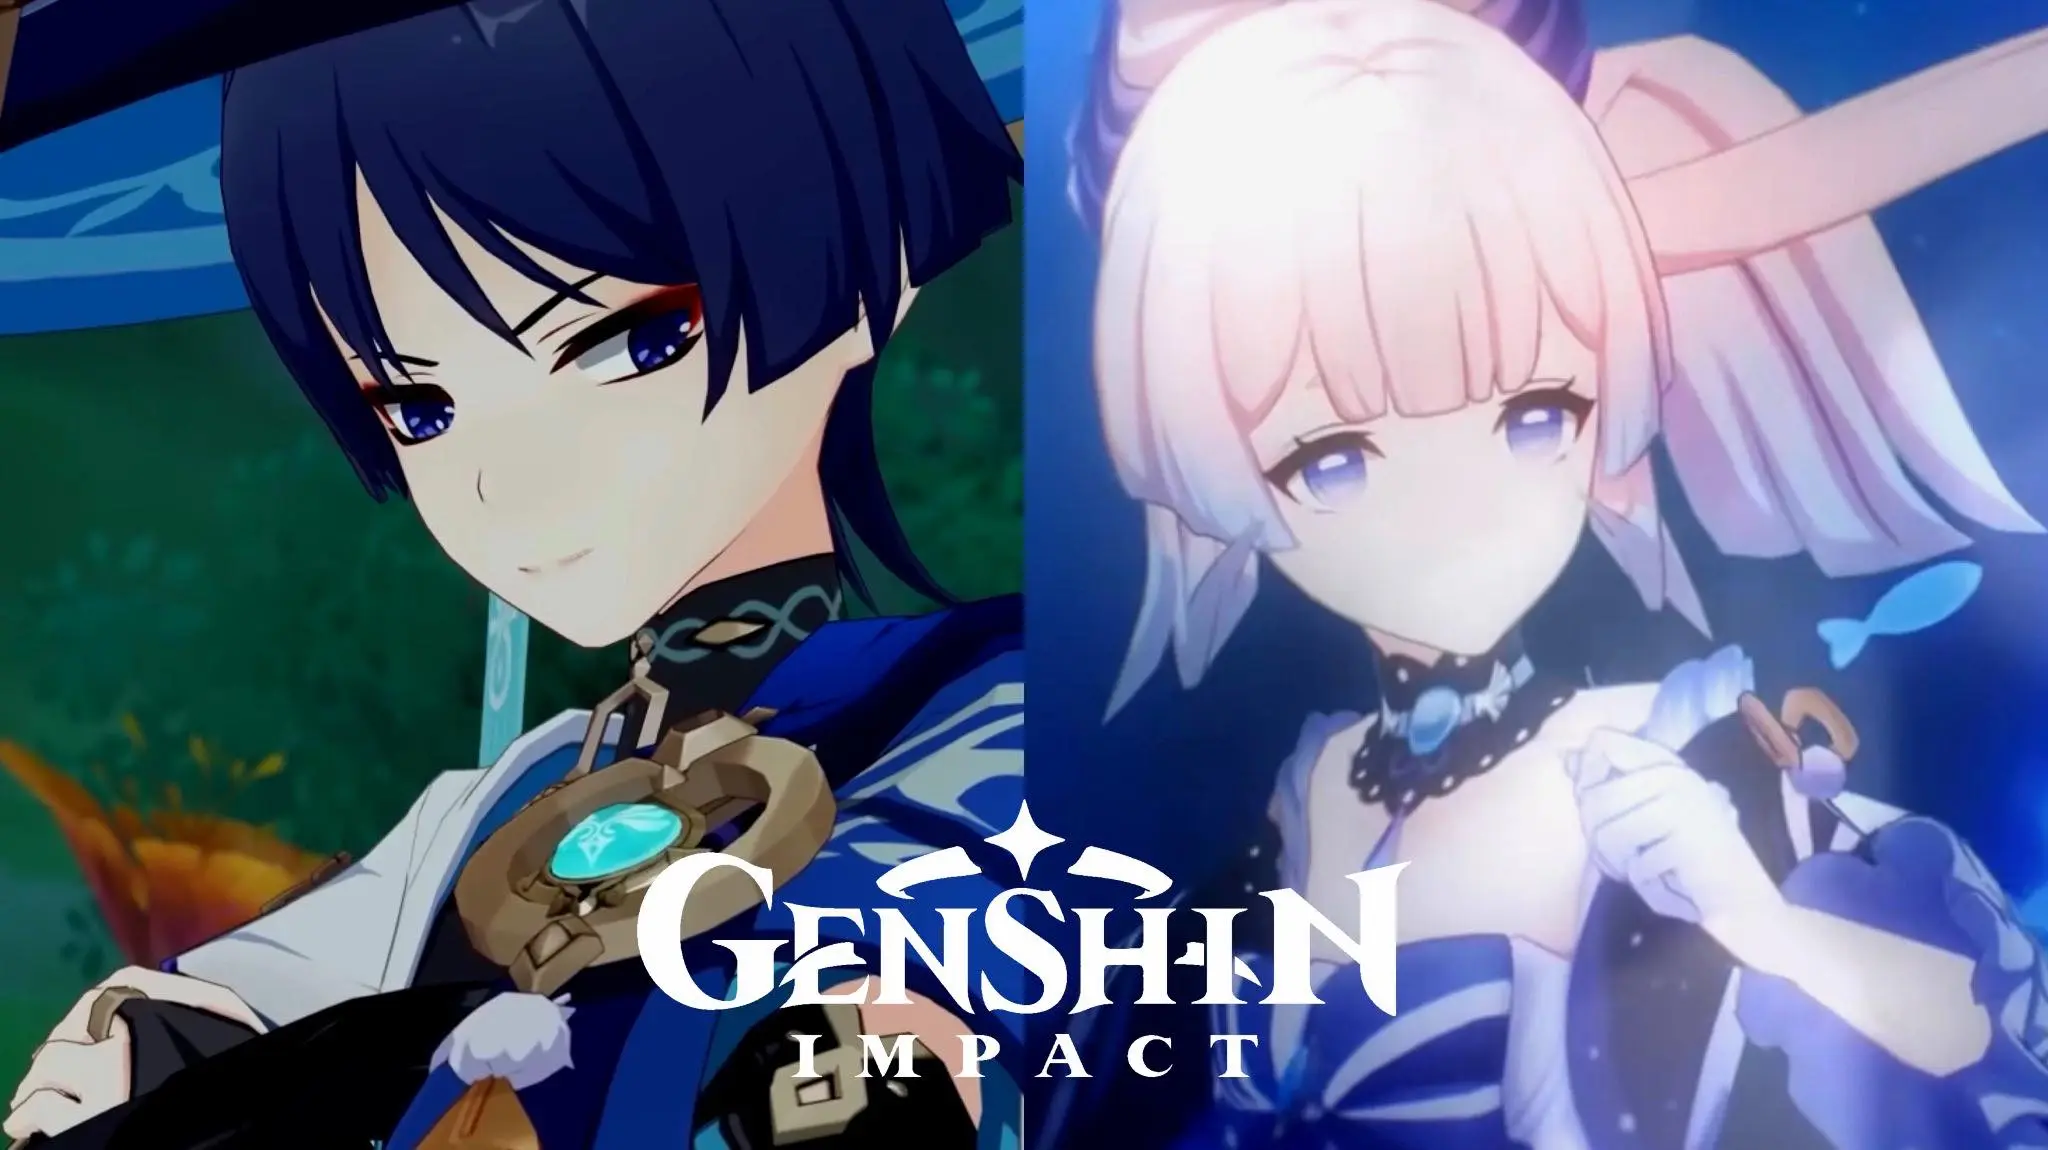 A bit um… disturbing lol Genshin Impact